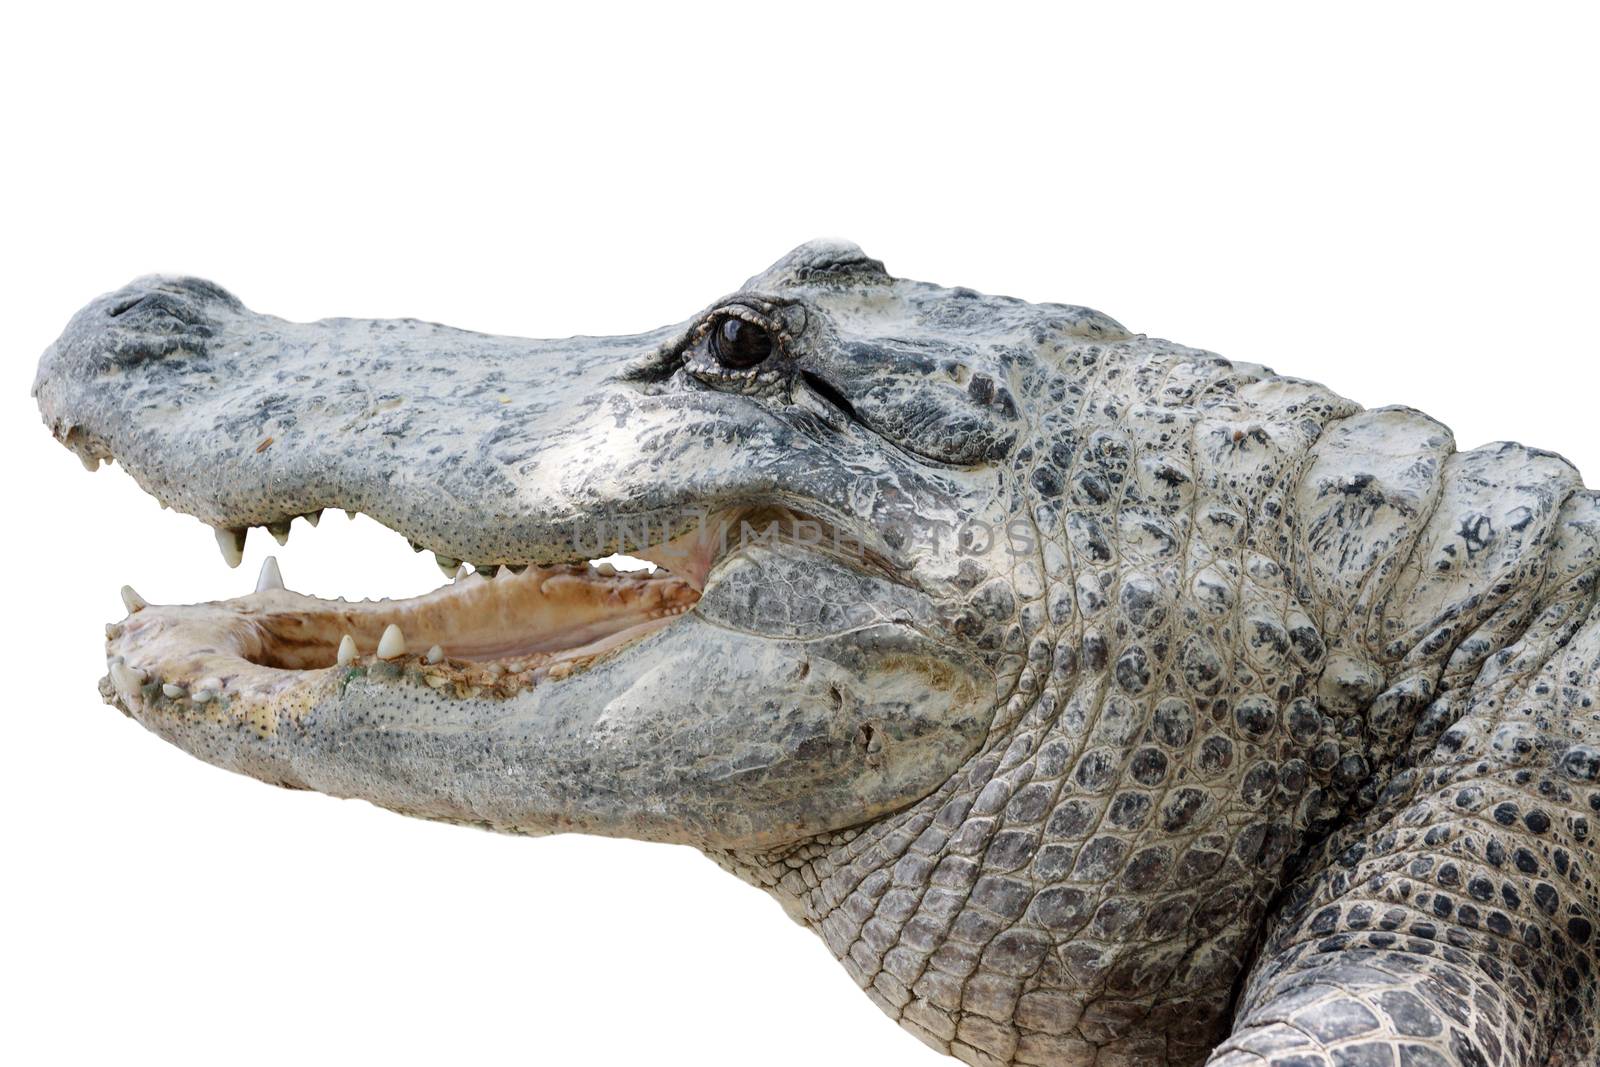 Crocodile with sharp teeth by Roka